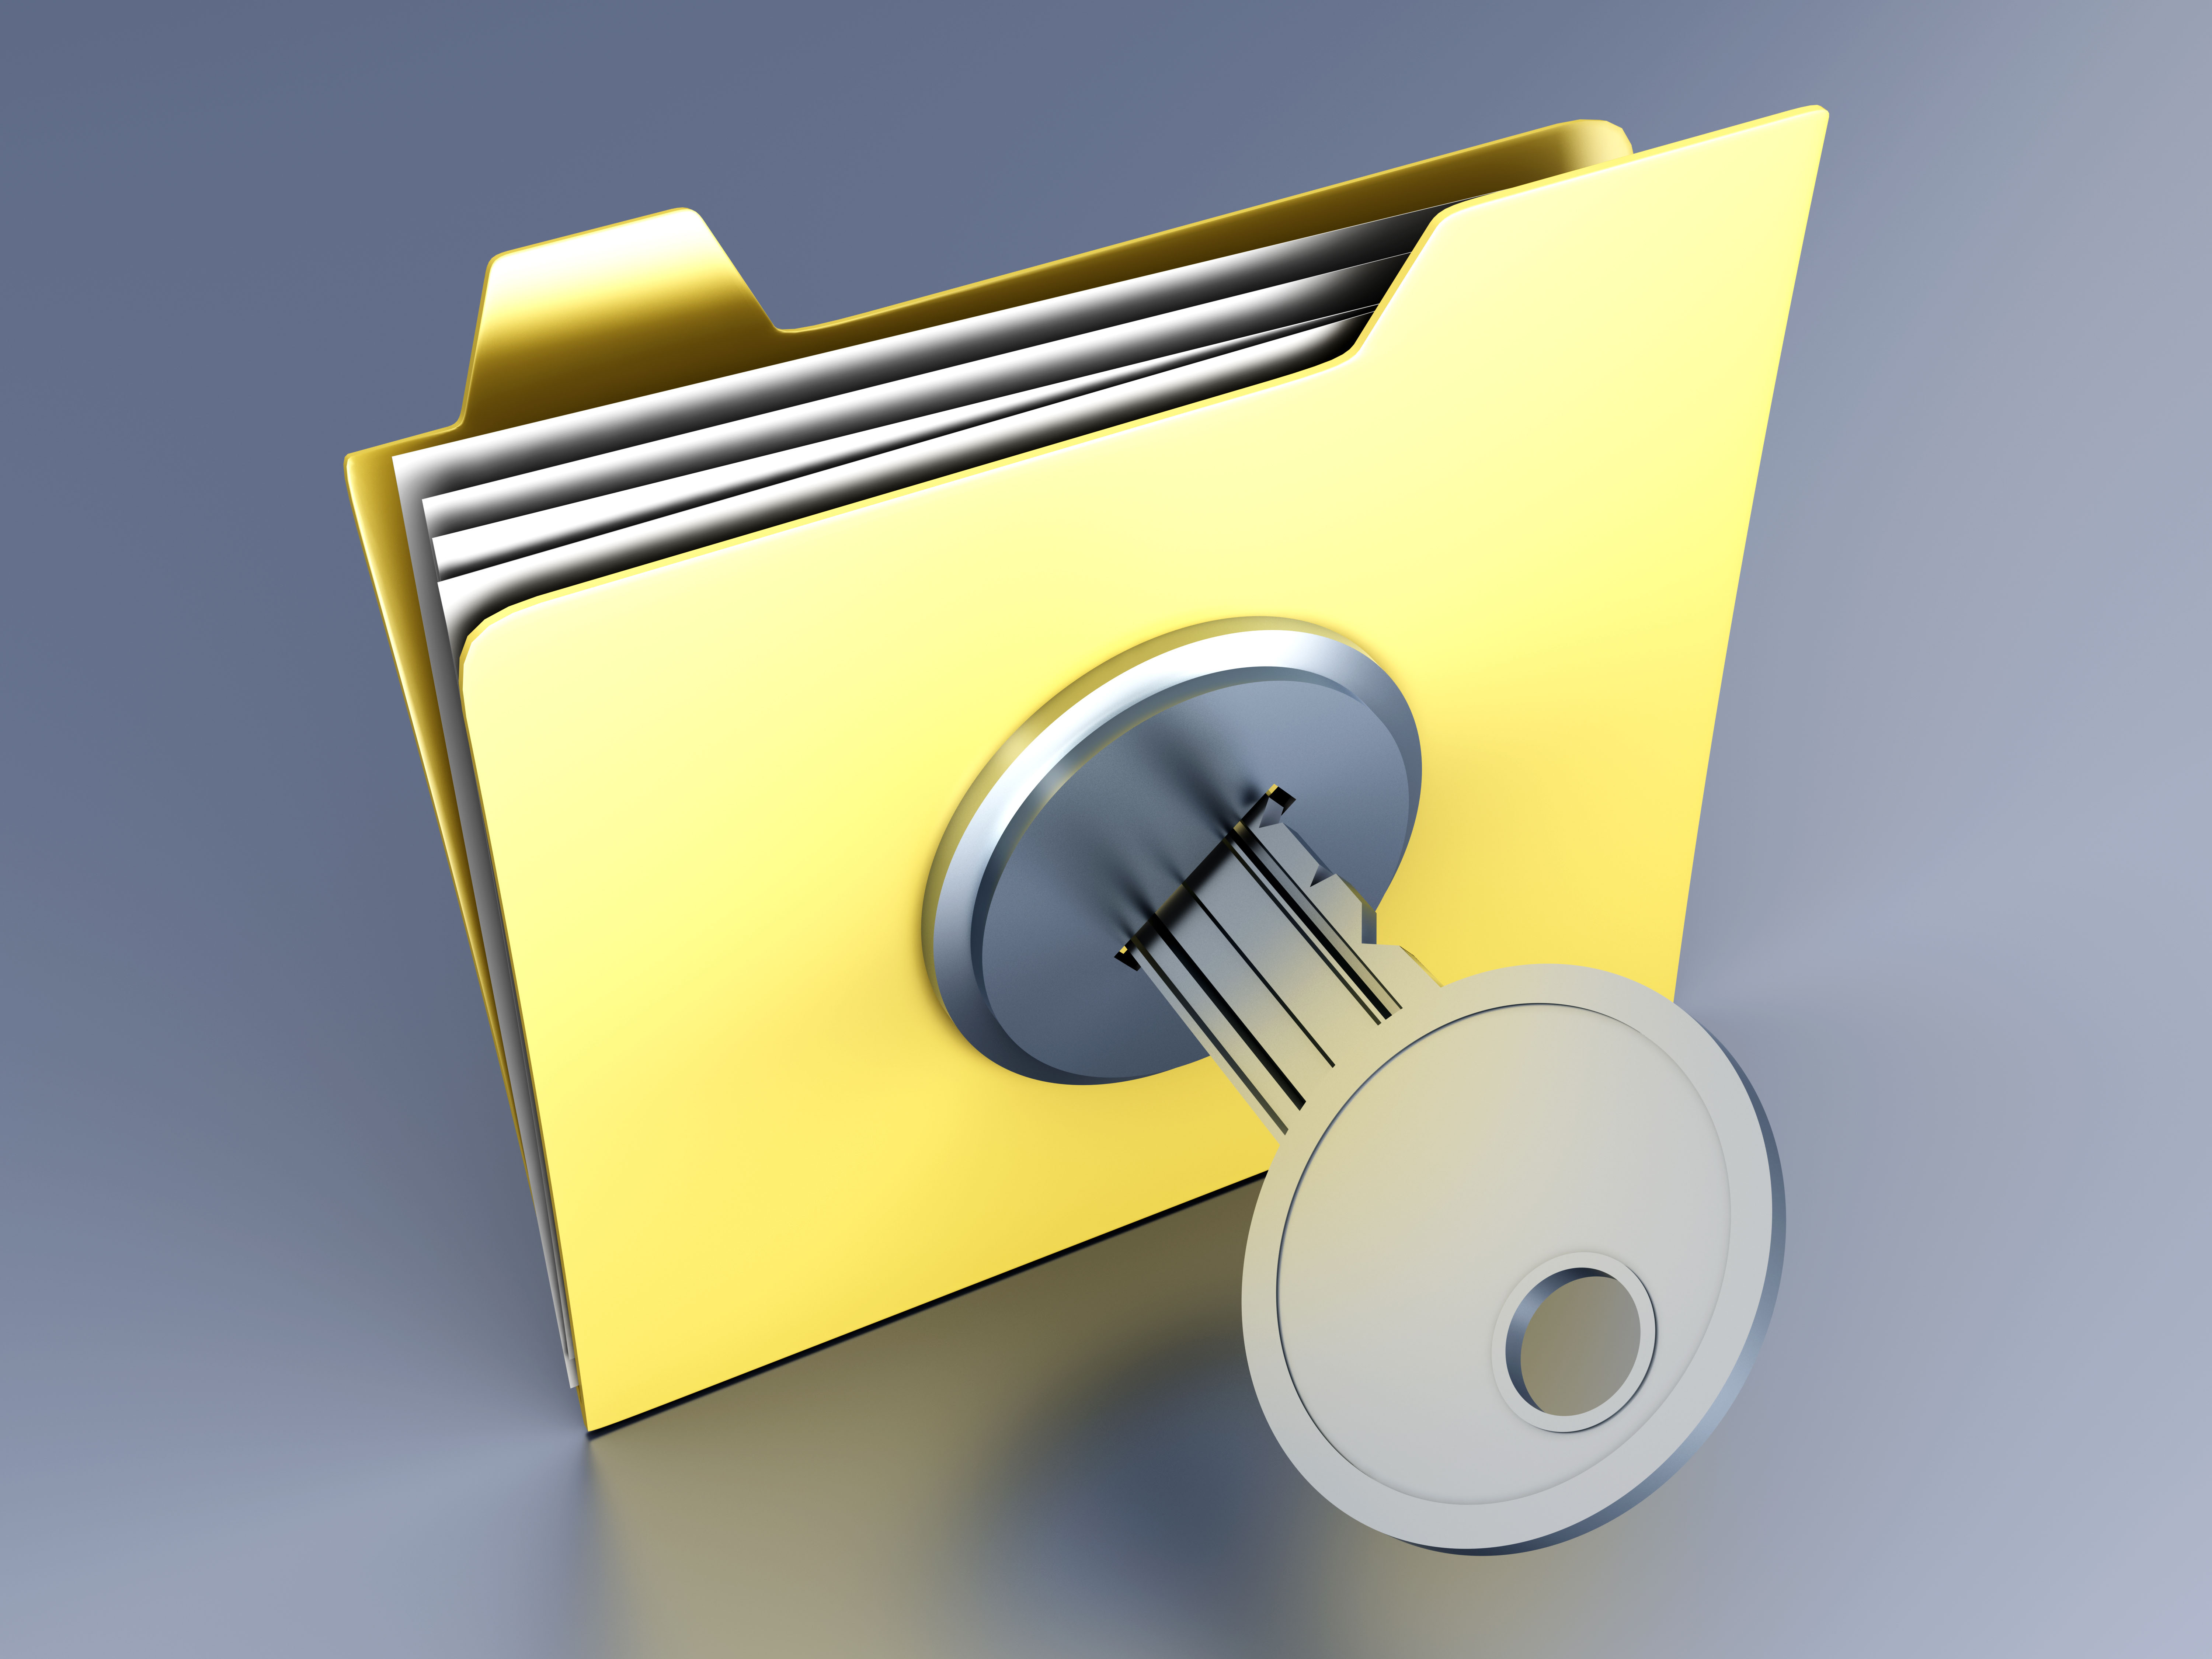 A locked Folder. 3D illustration.